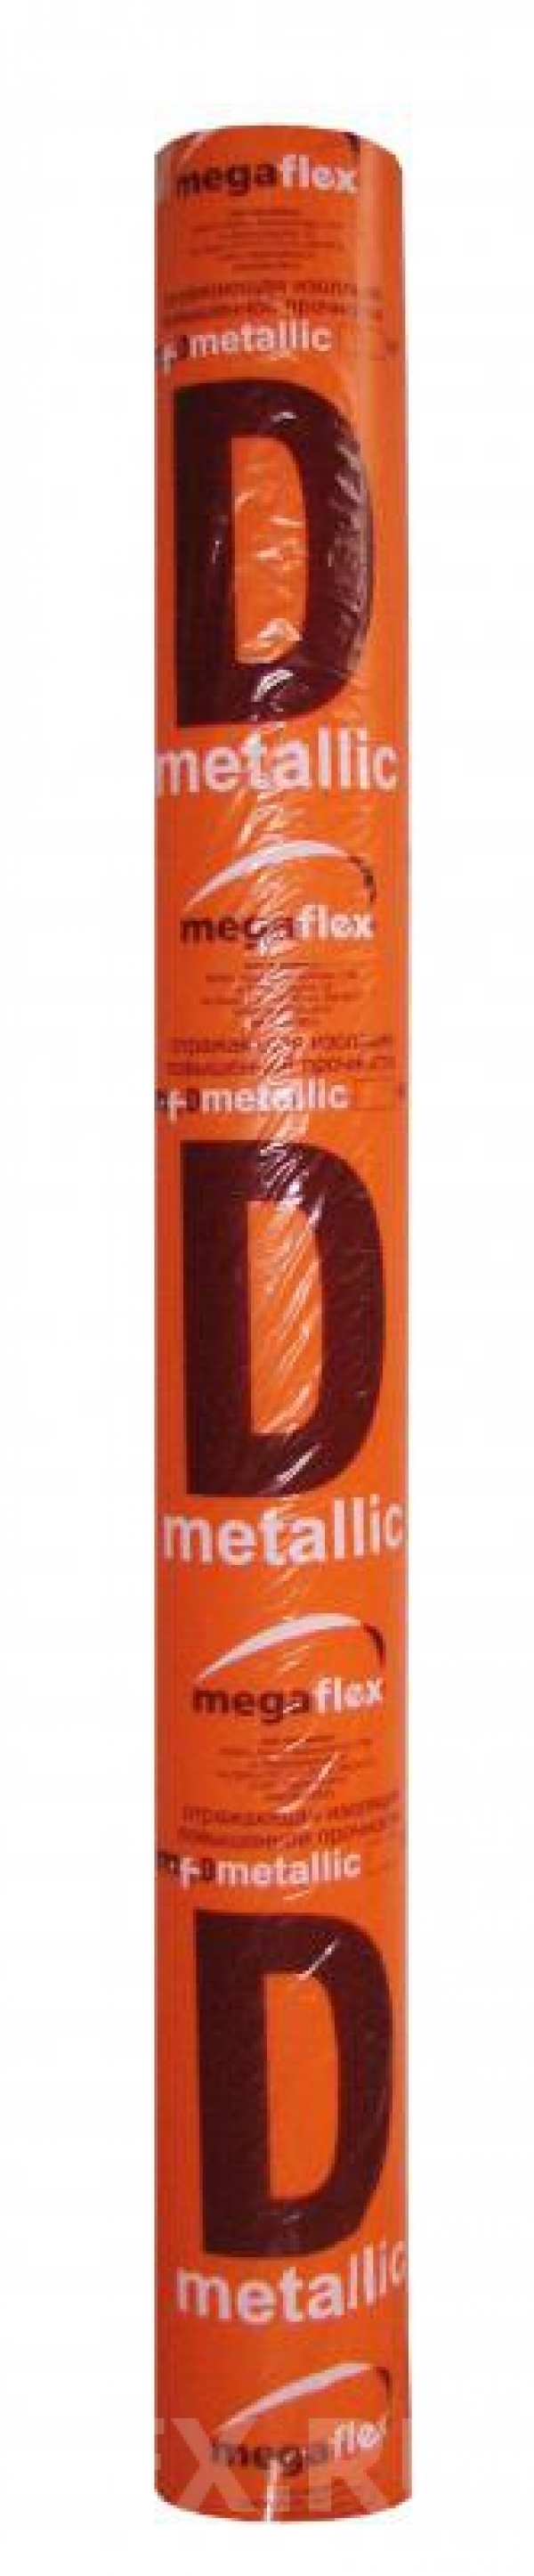 Мегафлекс D metallic